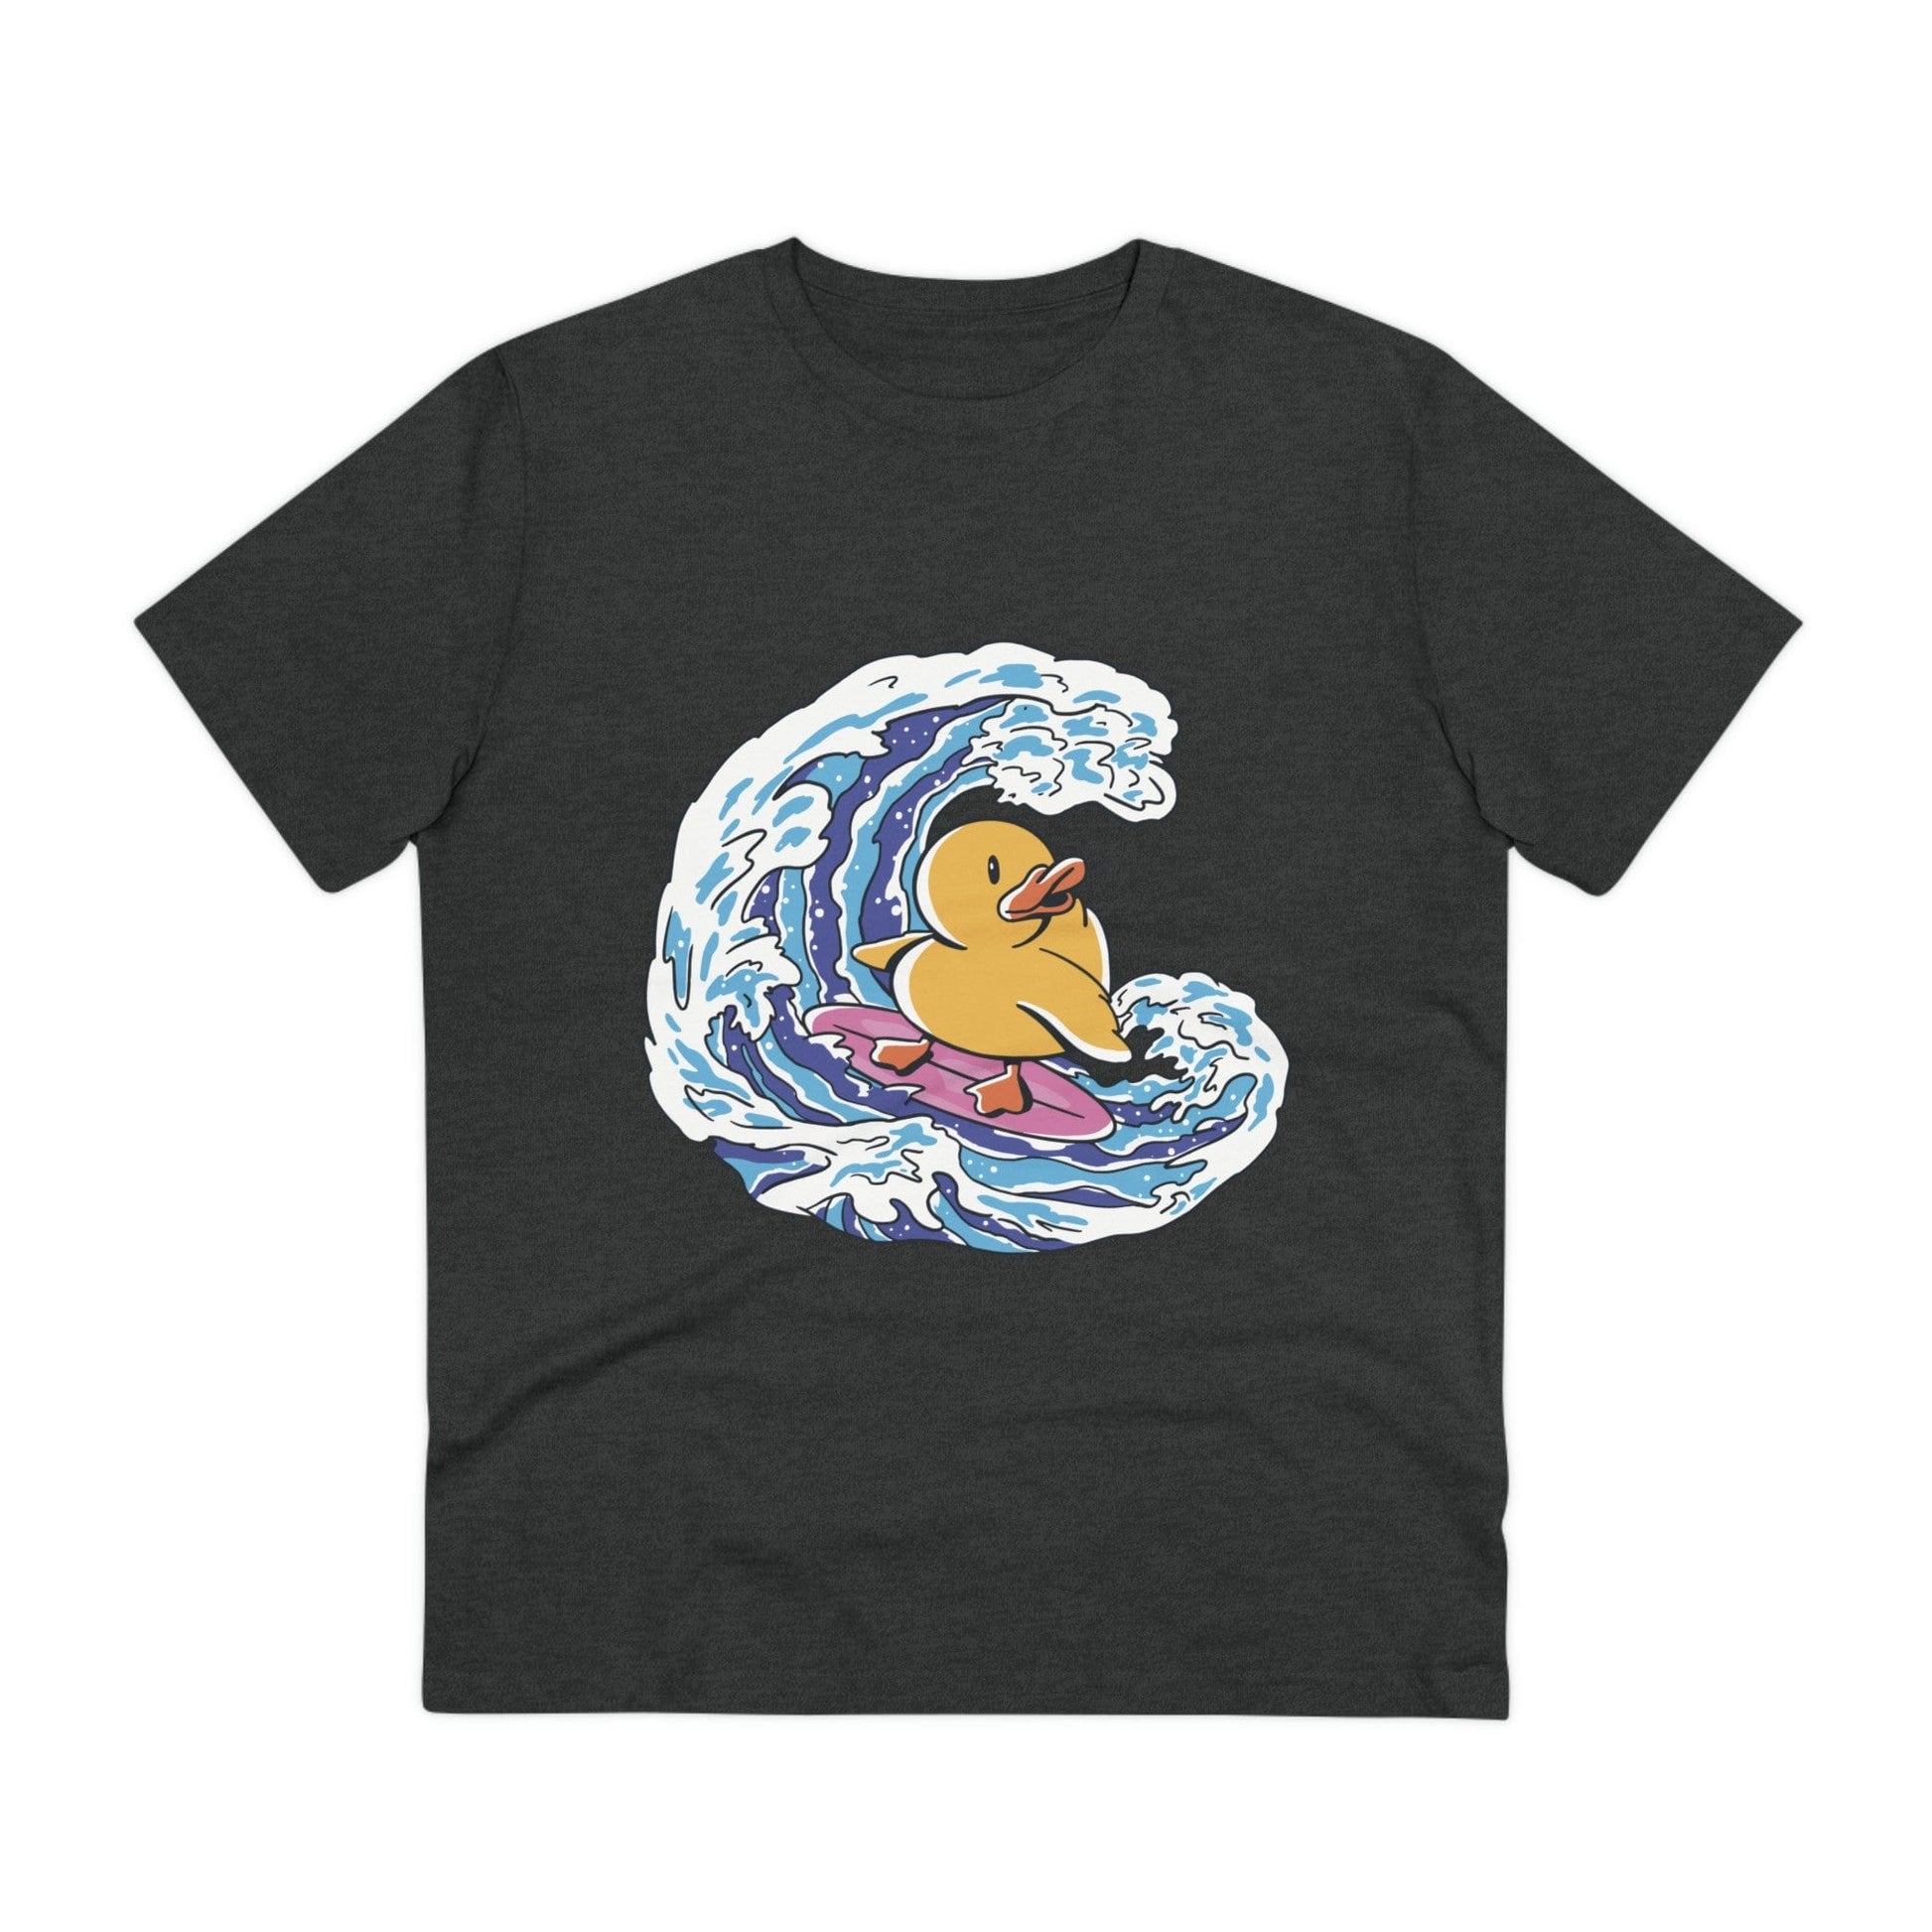 Printify T-Shirt Dark Heather Grey / 2XS Surfing - Rubber Duck - Front Design